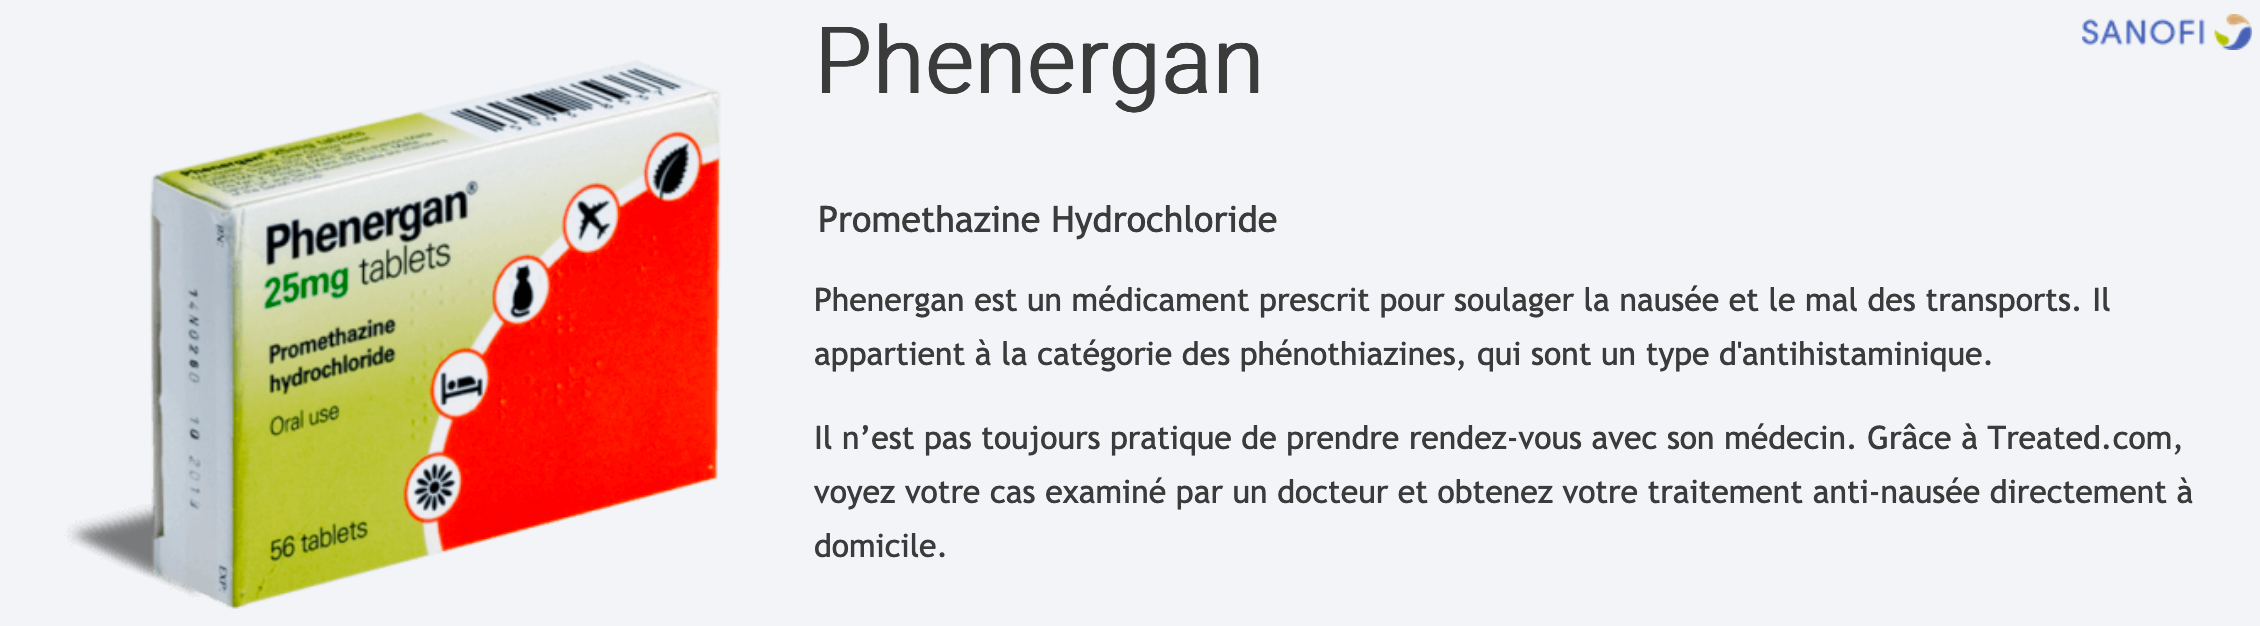 Phenergan